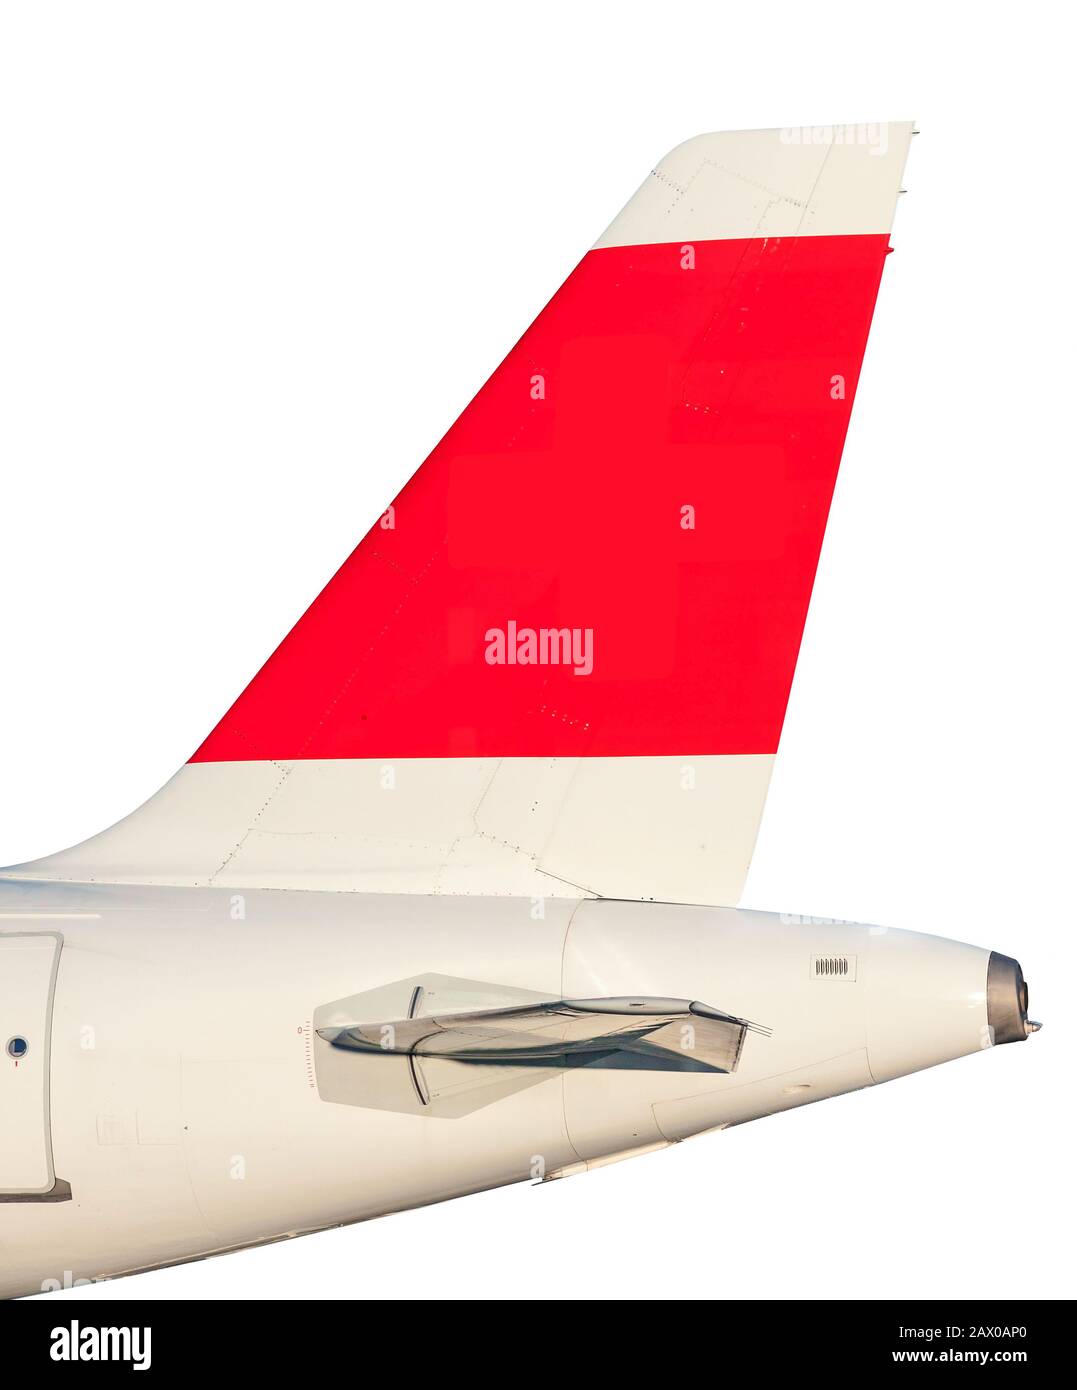 Pinna di coda dell'aeroplano isolata su sfondo bianco Foto Stock